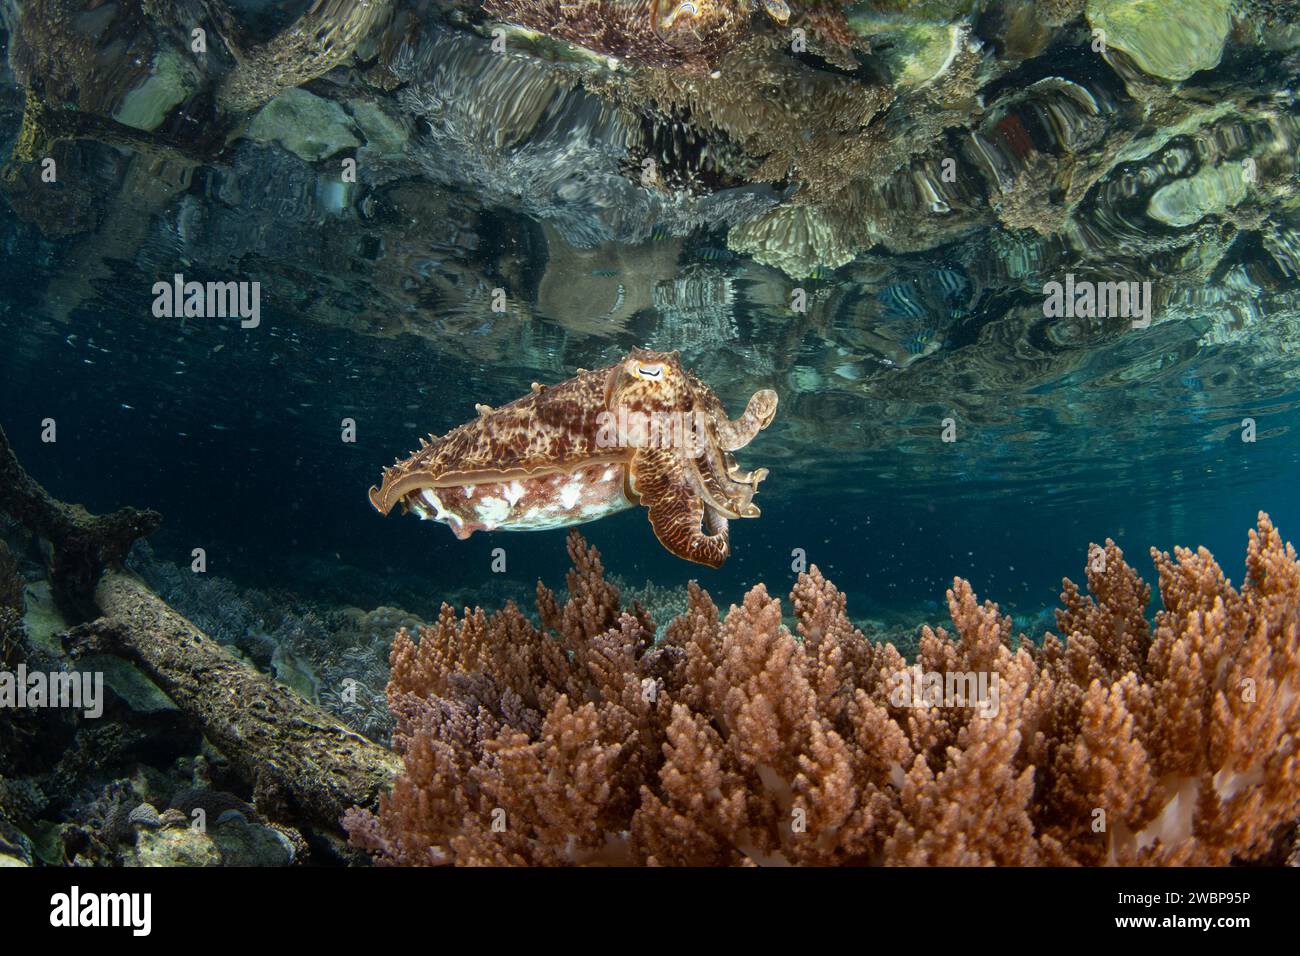 Ein Broadclub Tintenfisch, Sepia latimanus, schwebt über gesunden Korallen auf einem Riff in Raja Ampat, Indonesien. Dieser Kopffüßer kann schnell seine Farben ändern. Stockfoto